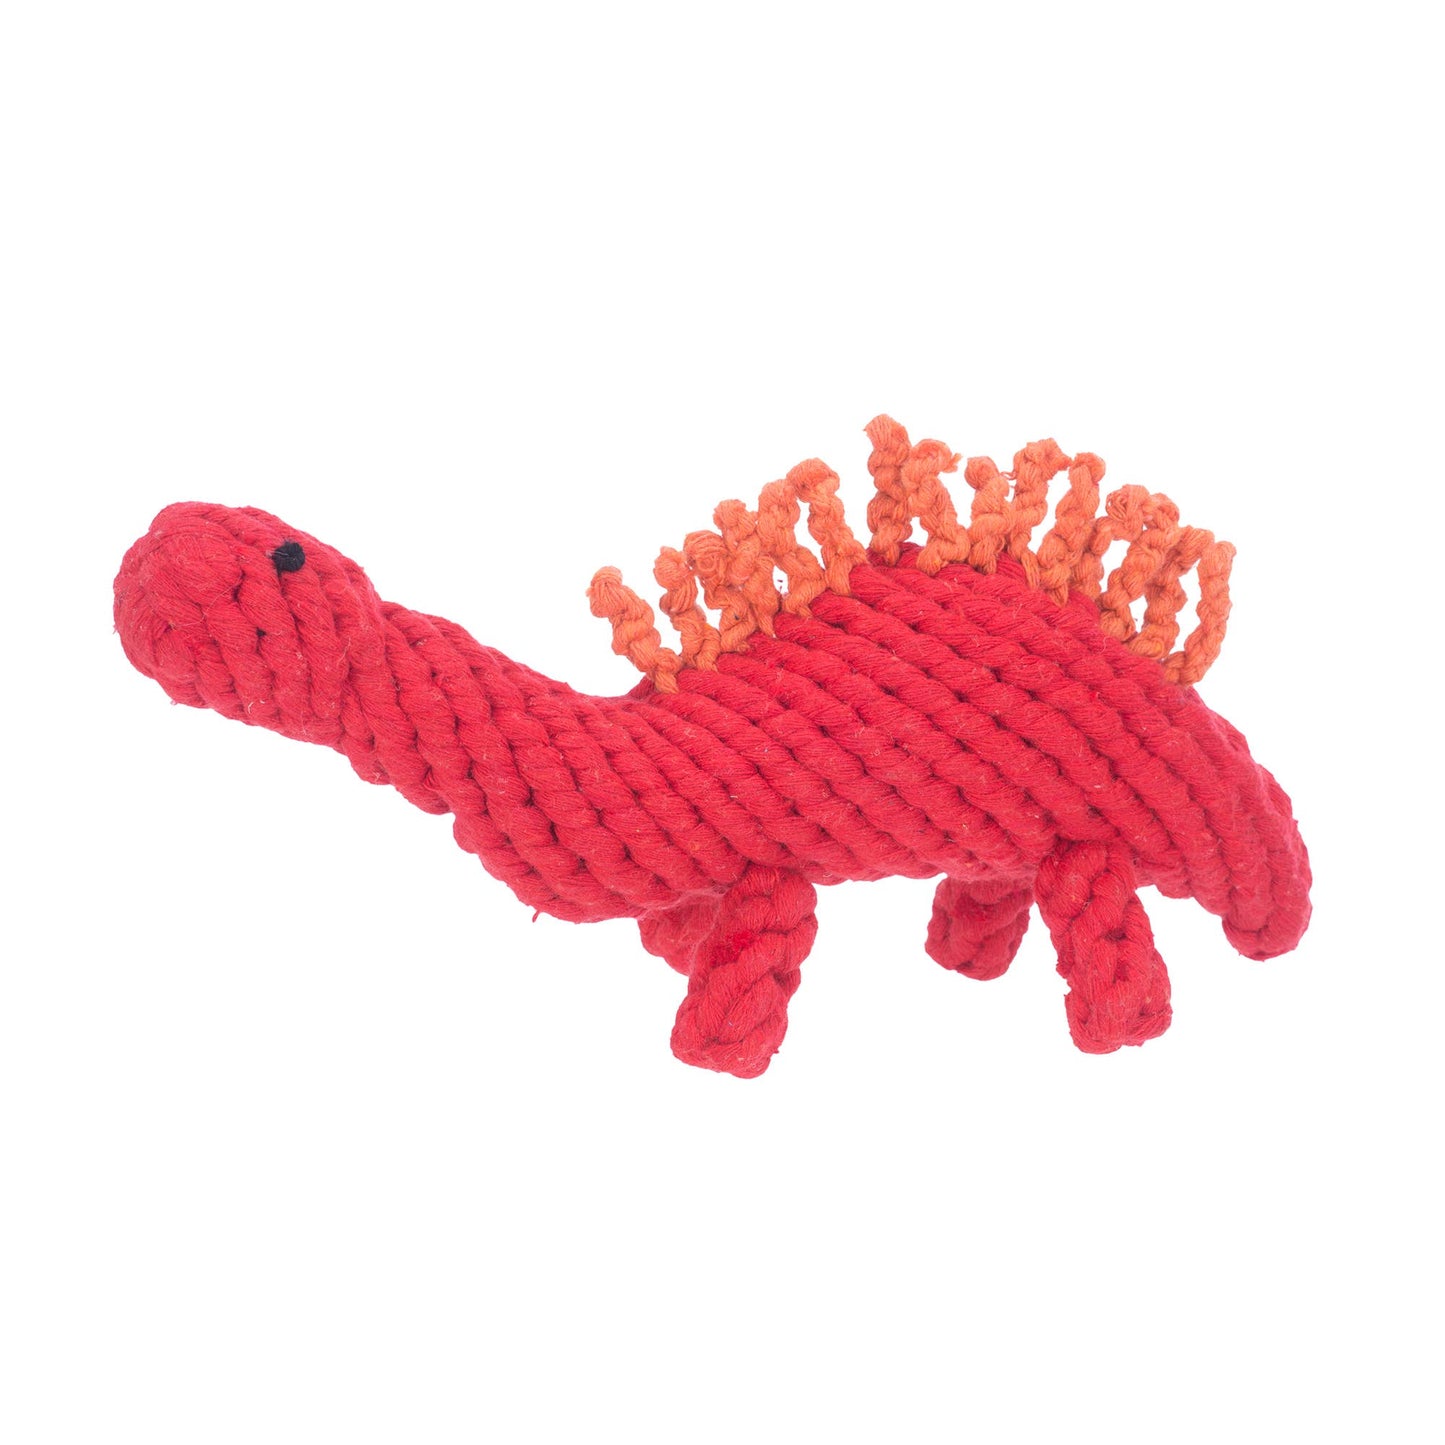 Stegosaurus Rope Toy